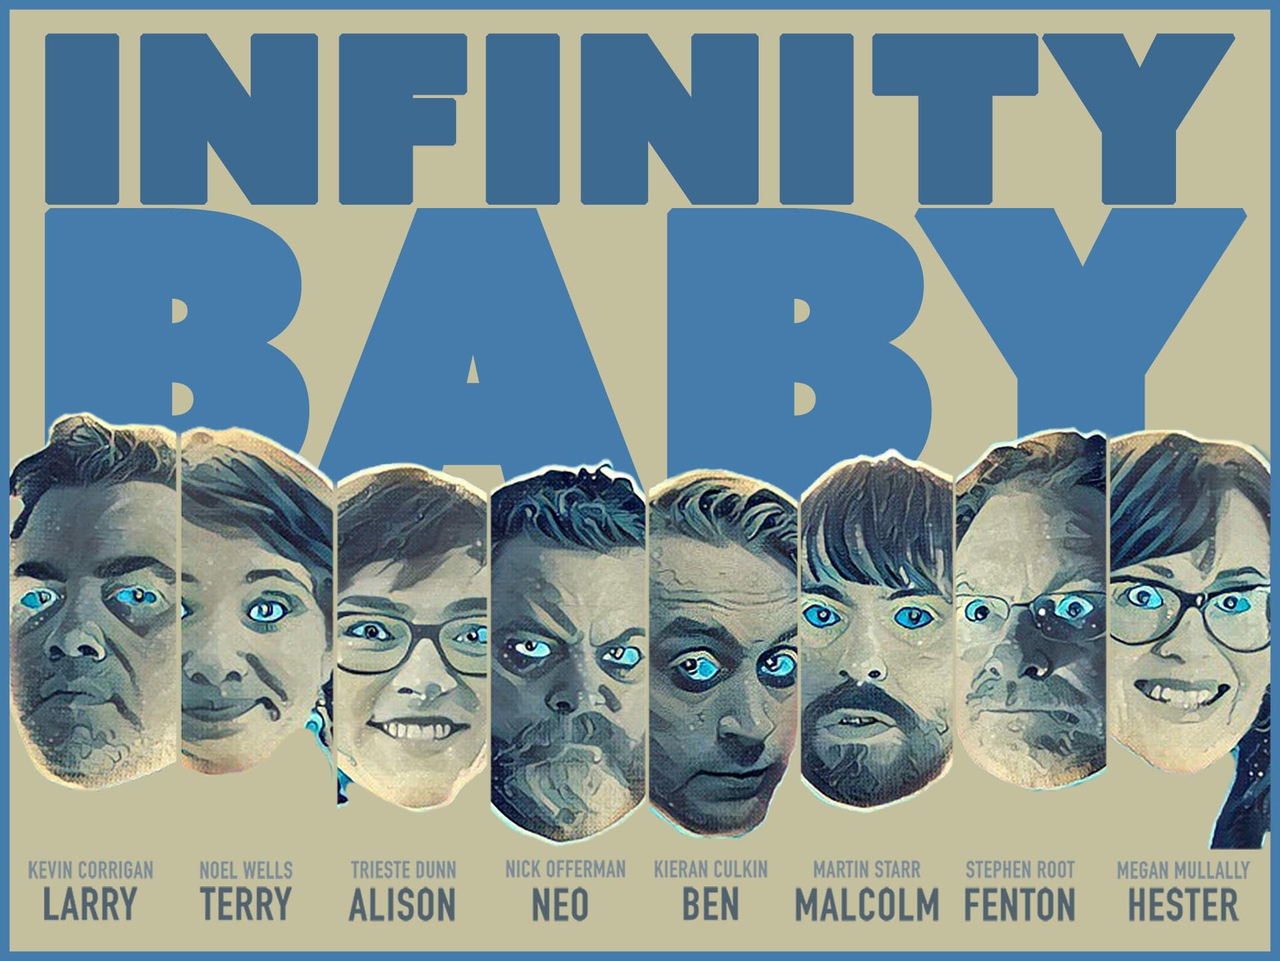 نیک آفرمن در صحنه فیلم سینمایی Infinity Baby به همراه مگان مولالی، کوین کوریگان، استیون روت، Trieste Kelly Dunn، Kieran Culkin، مارتین استار و Noël Wells